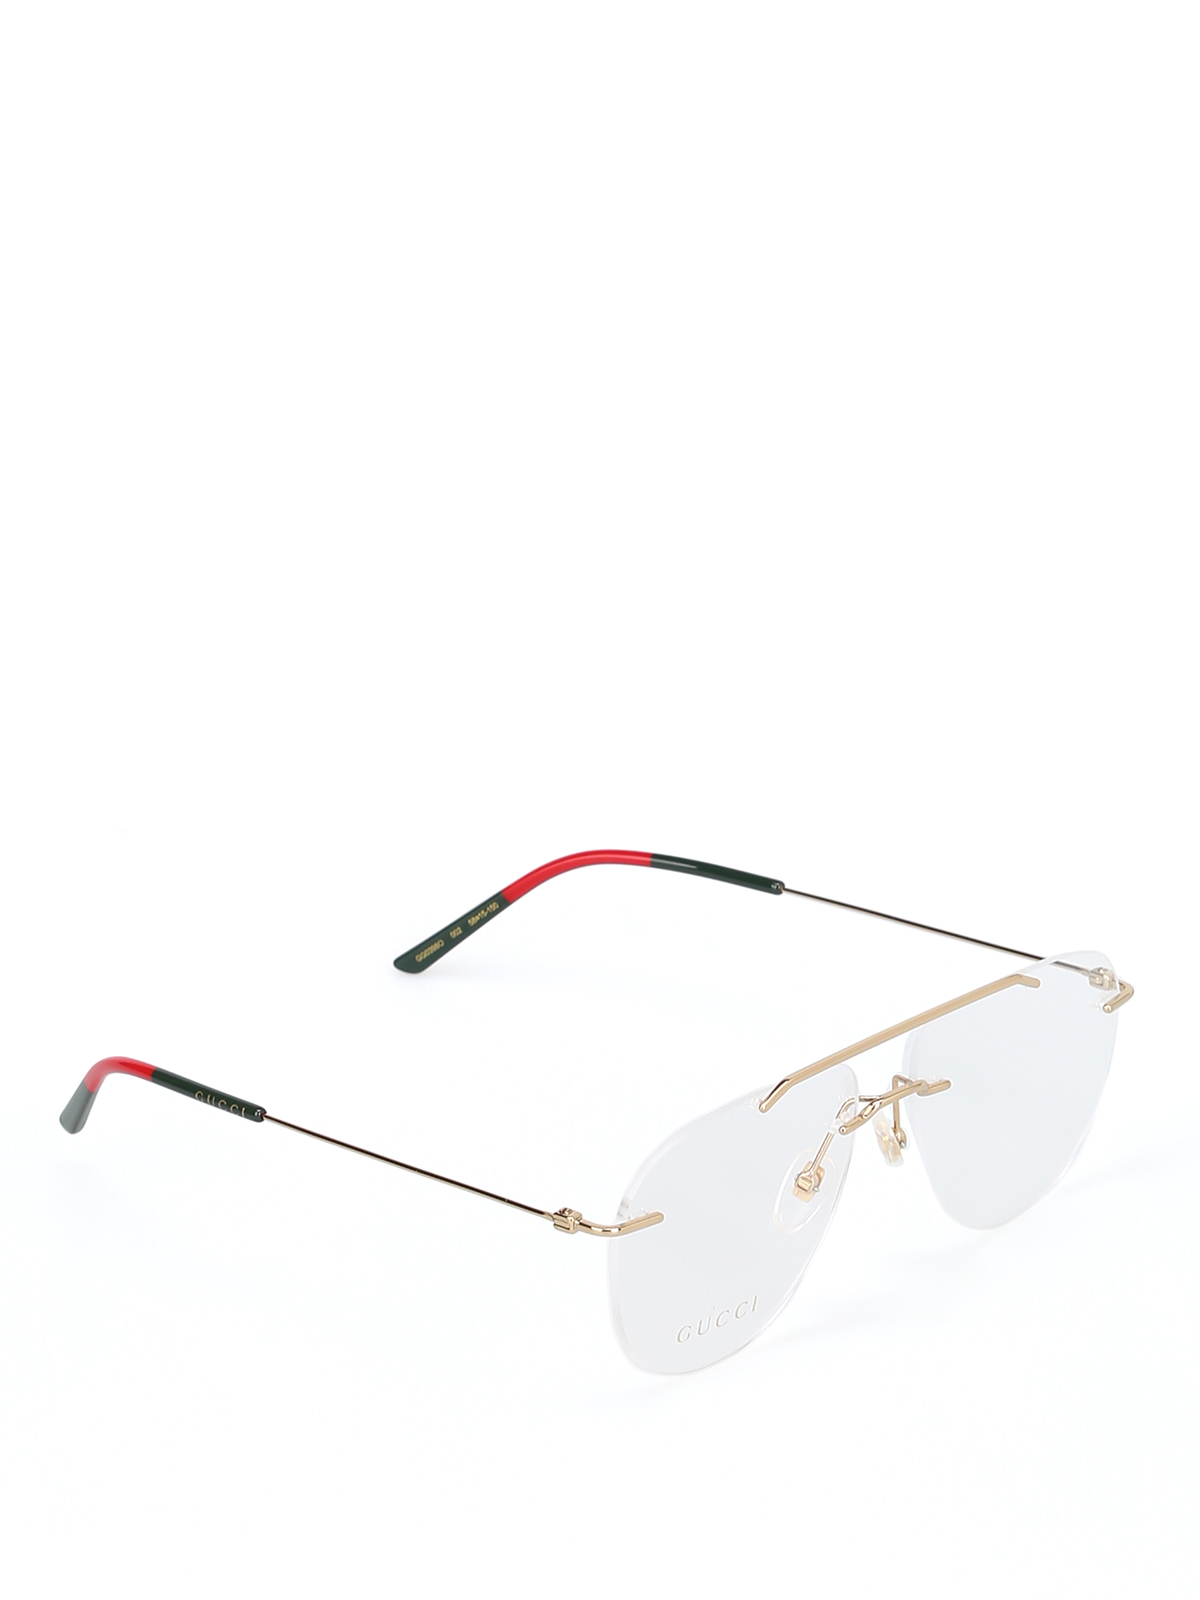 gucci frames for eyeglasses